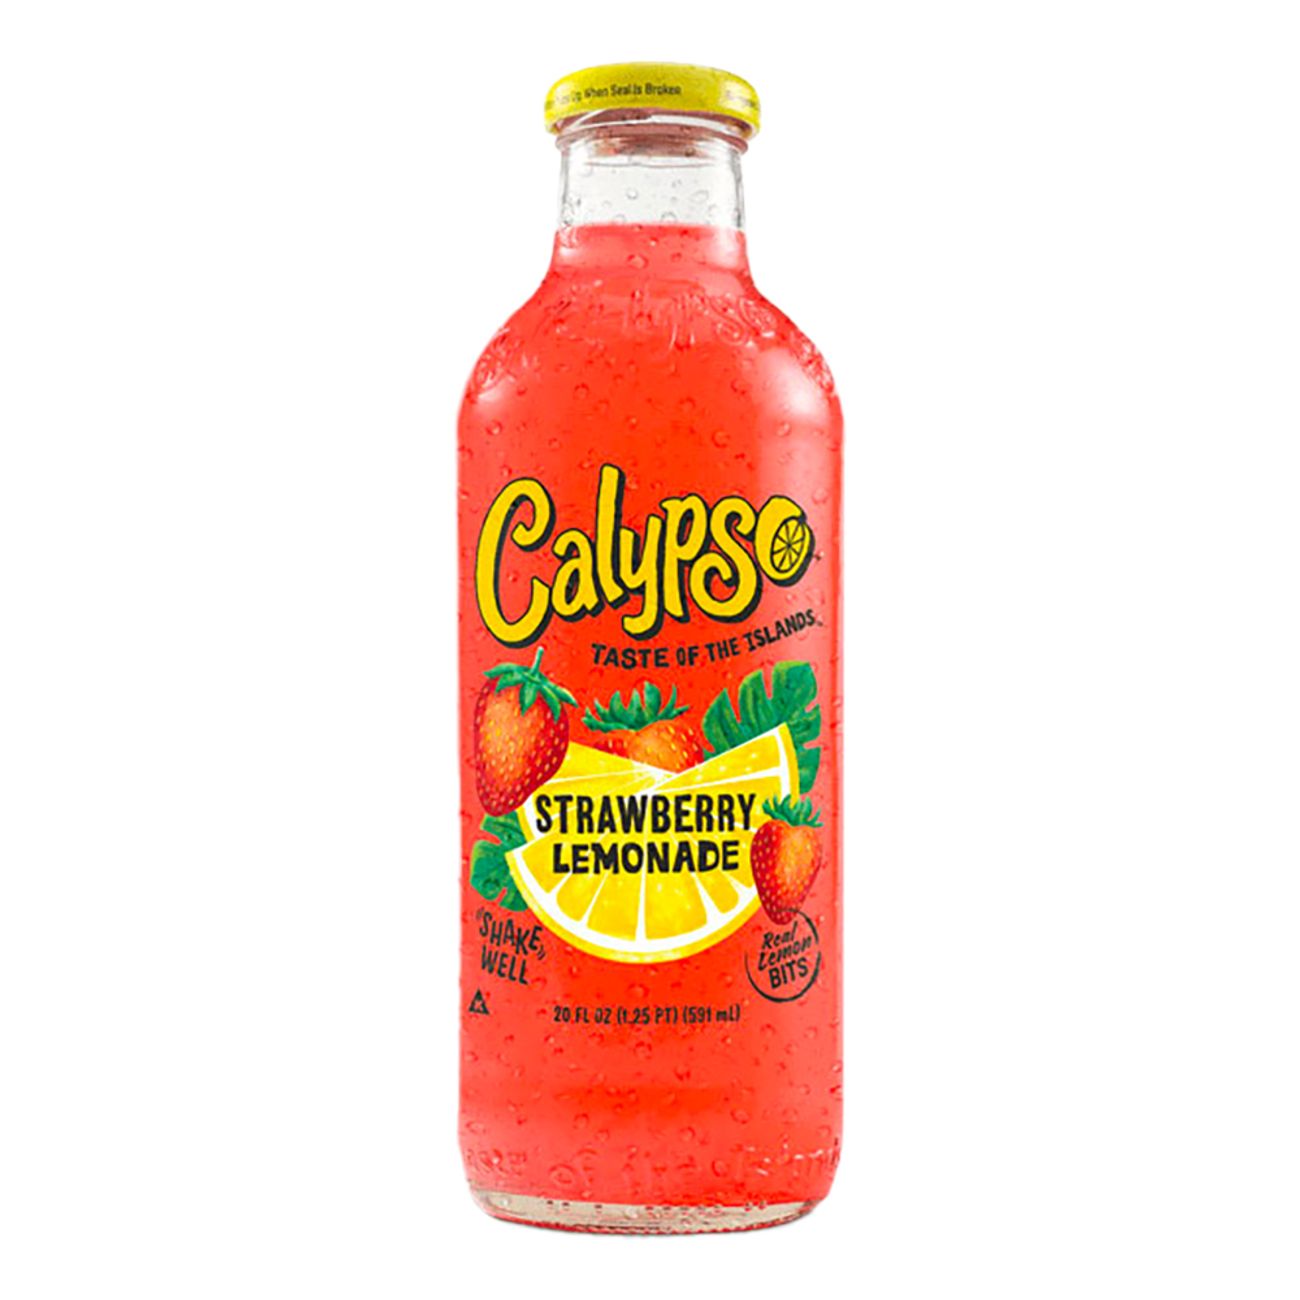 calypso-lemonade-strawberry-83129-1